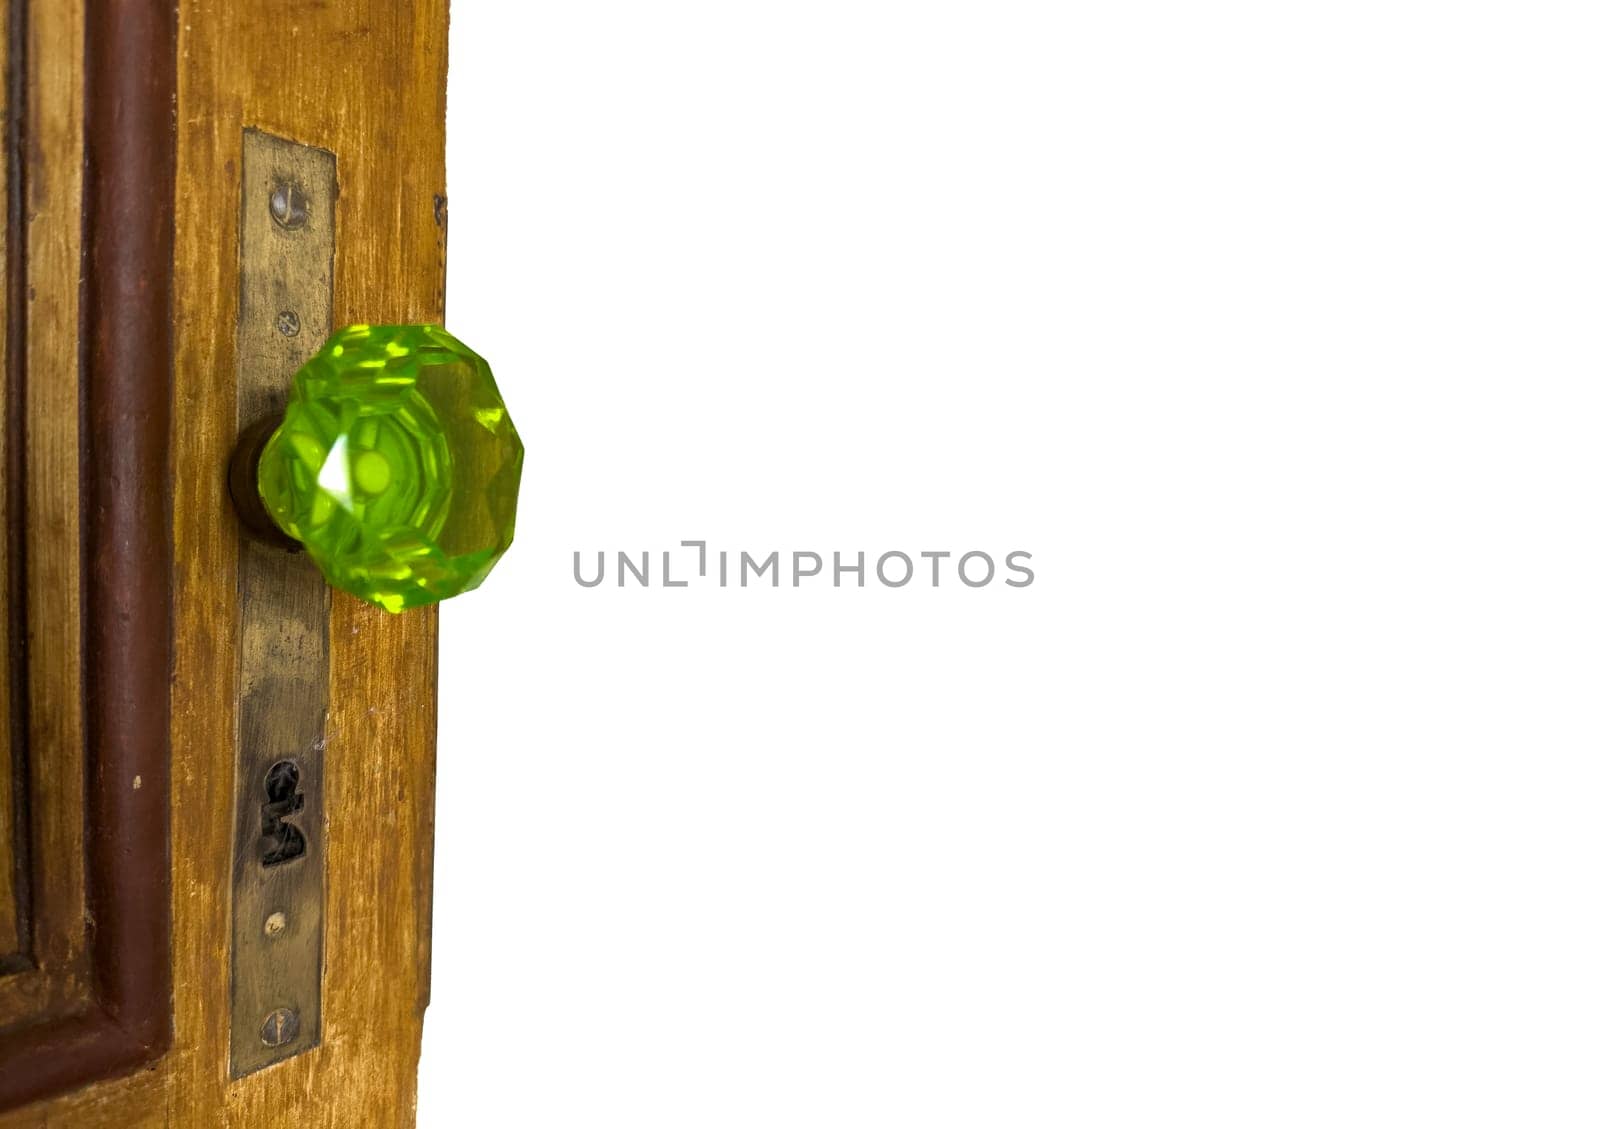 Classic green glass door knob with detailed design on wooden door.